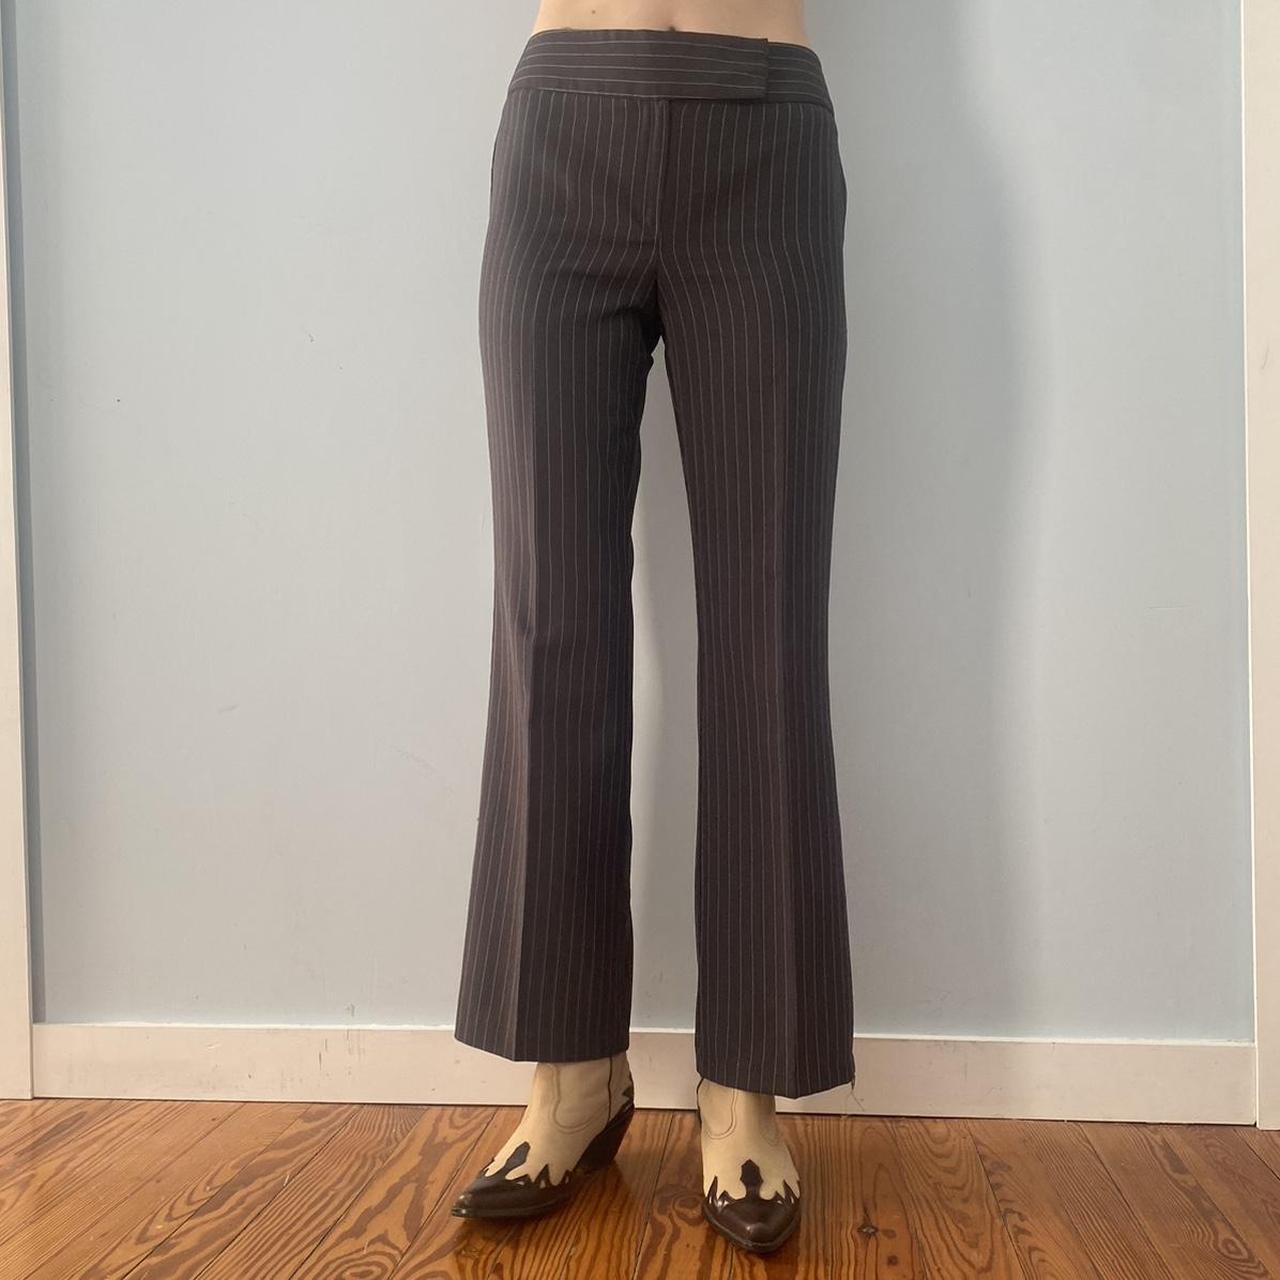 Vintage y2k grey pinstripe mid rise trousers. Flared... - Depop